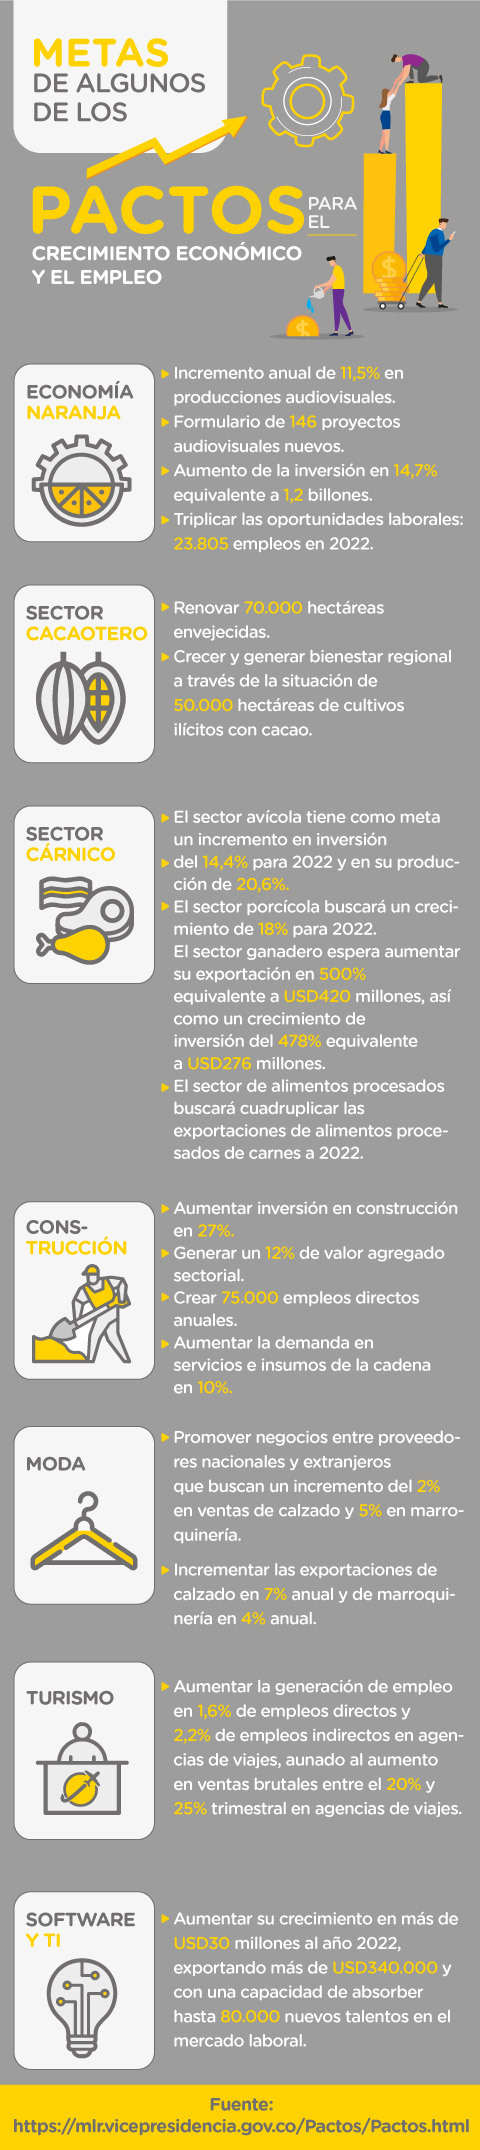 Metas de algunos de los principales pactos para el crecimiento económico y el empleo en Colombia.